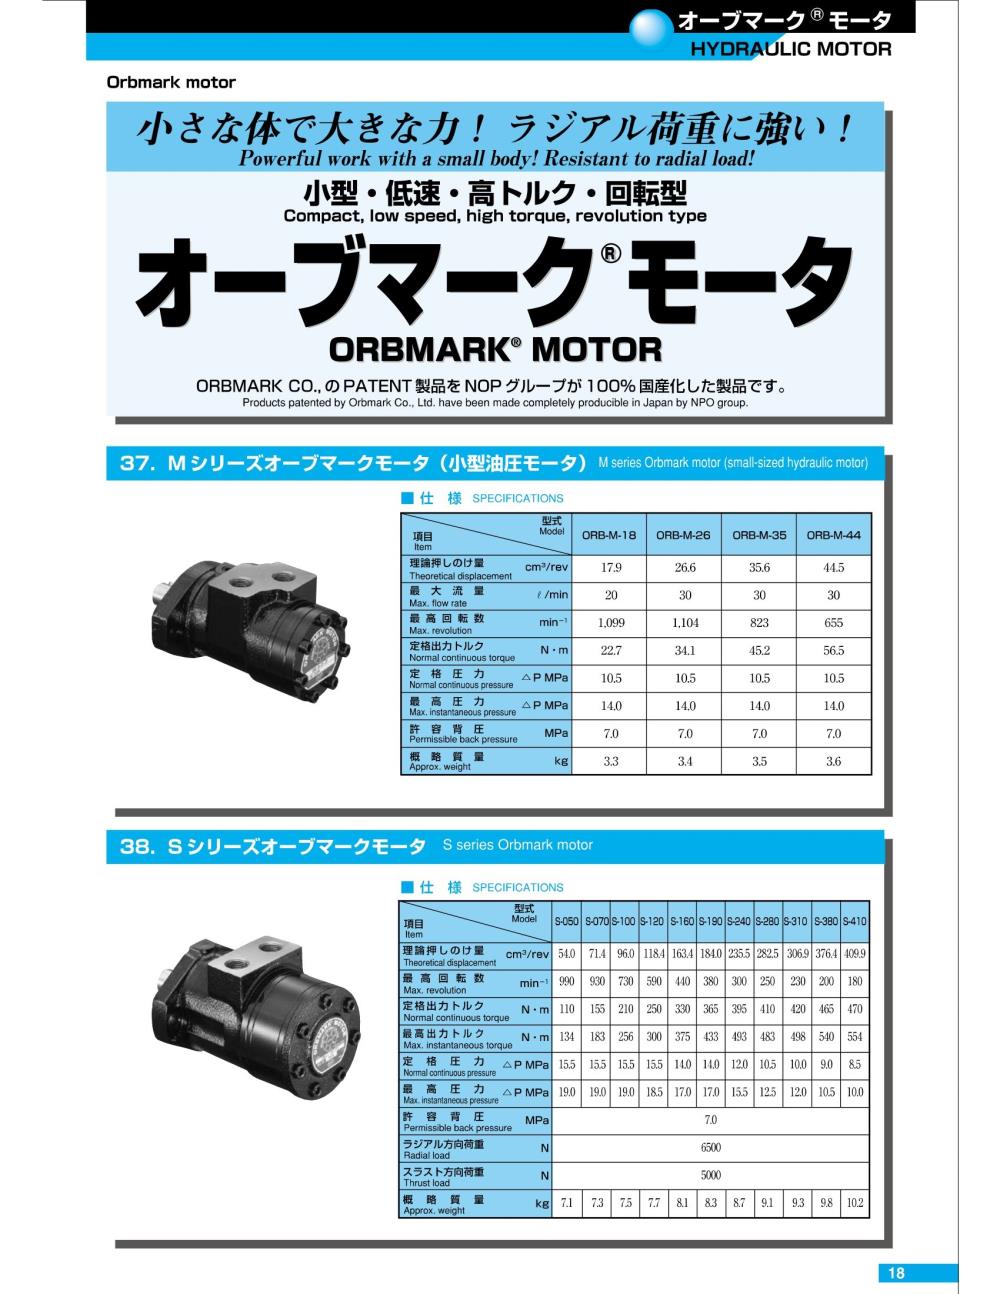 NOP ORBMARK Motor ORB-S Series